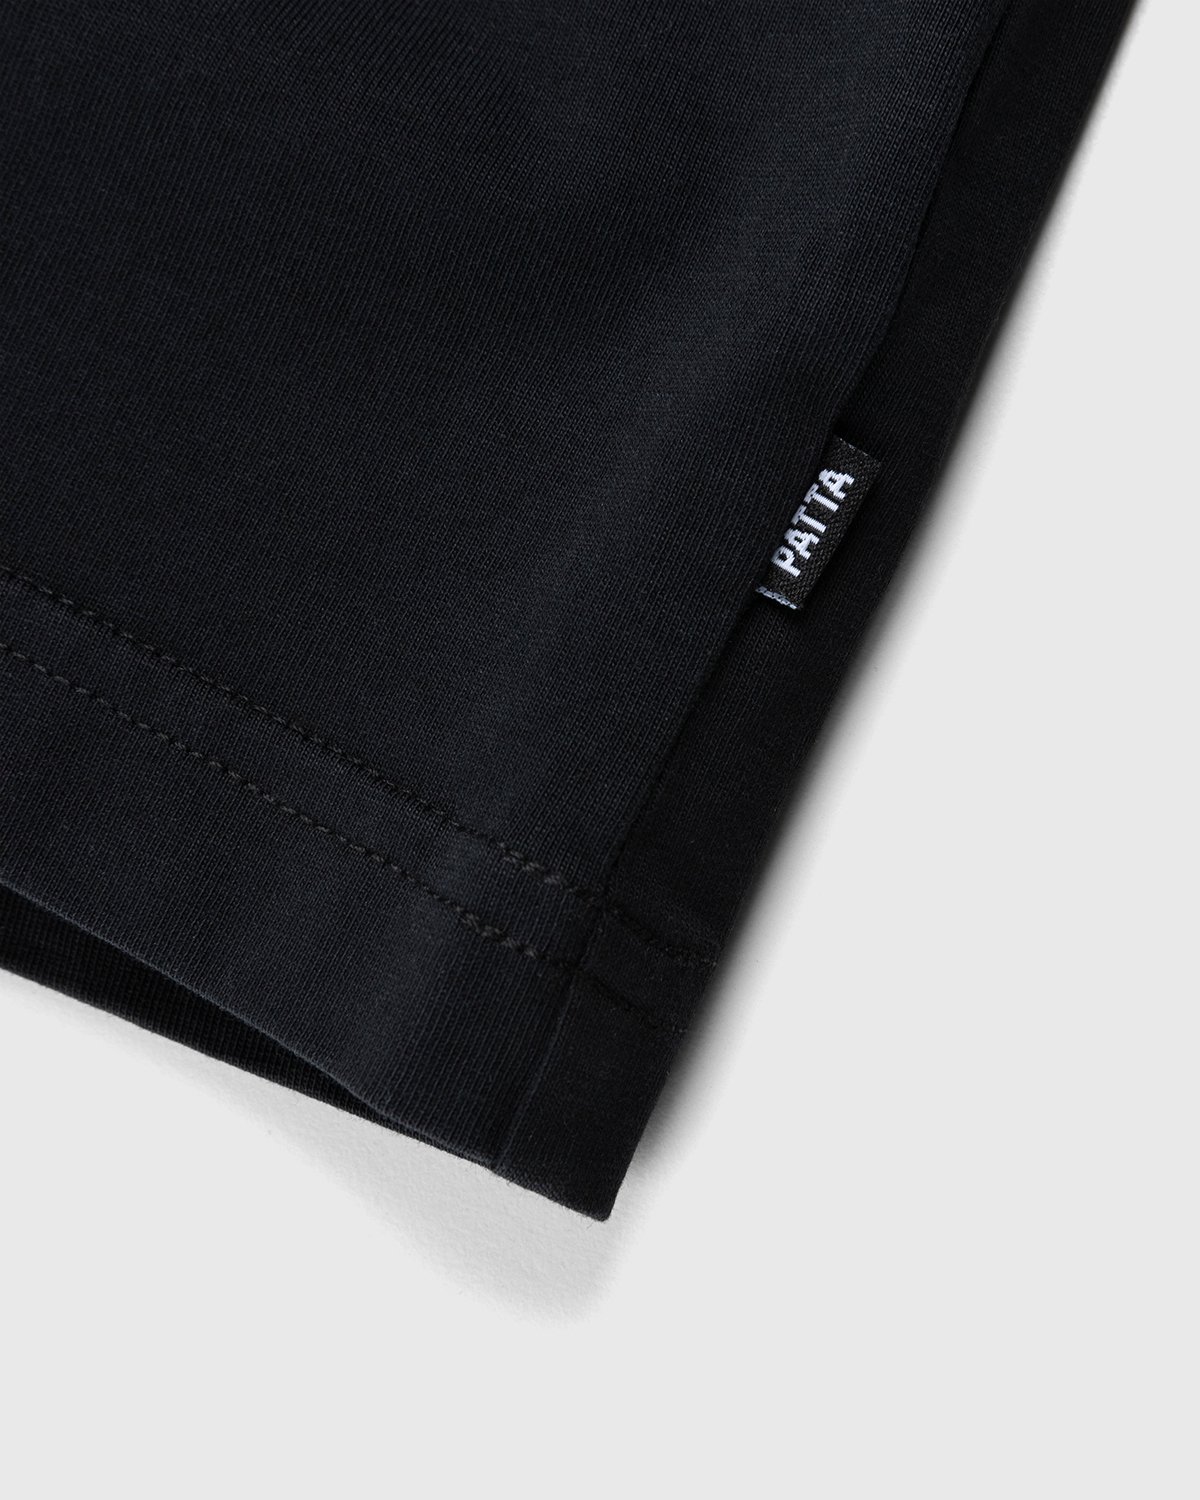 Patta - Basic Washed Pocket T-Shirt Black - Clothing - Black - Image 5